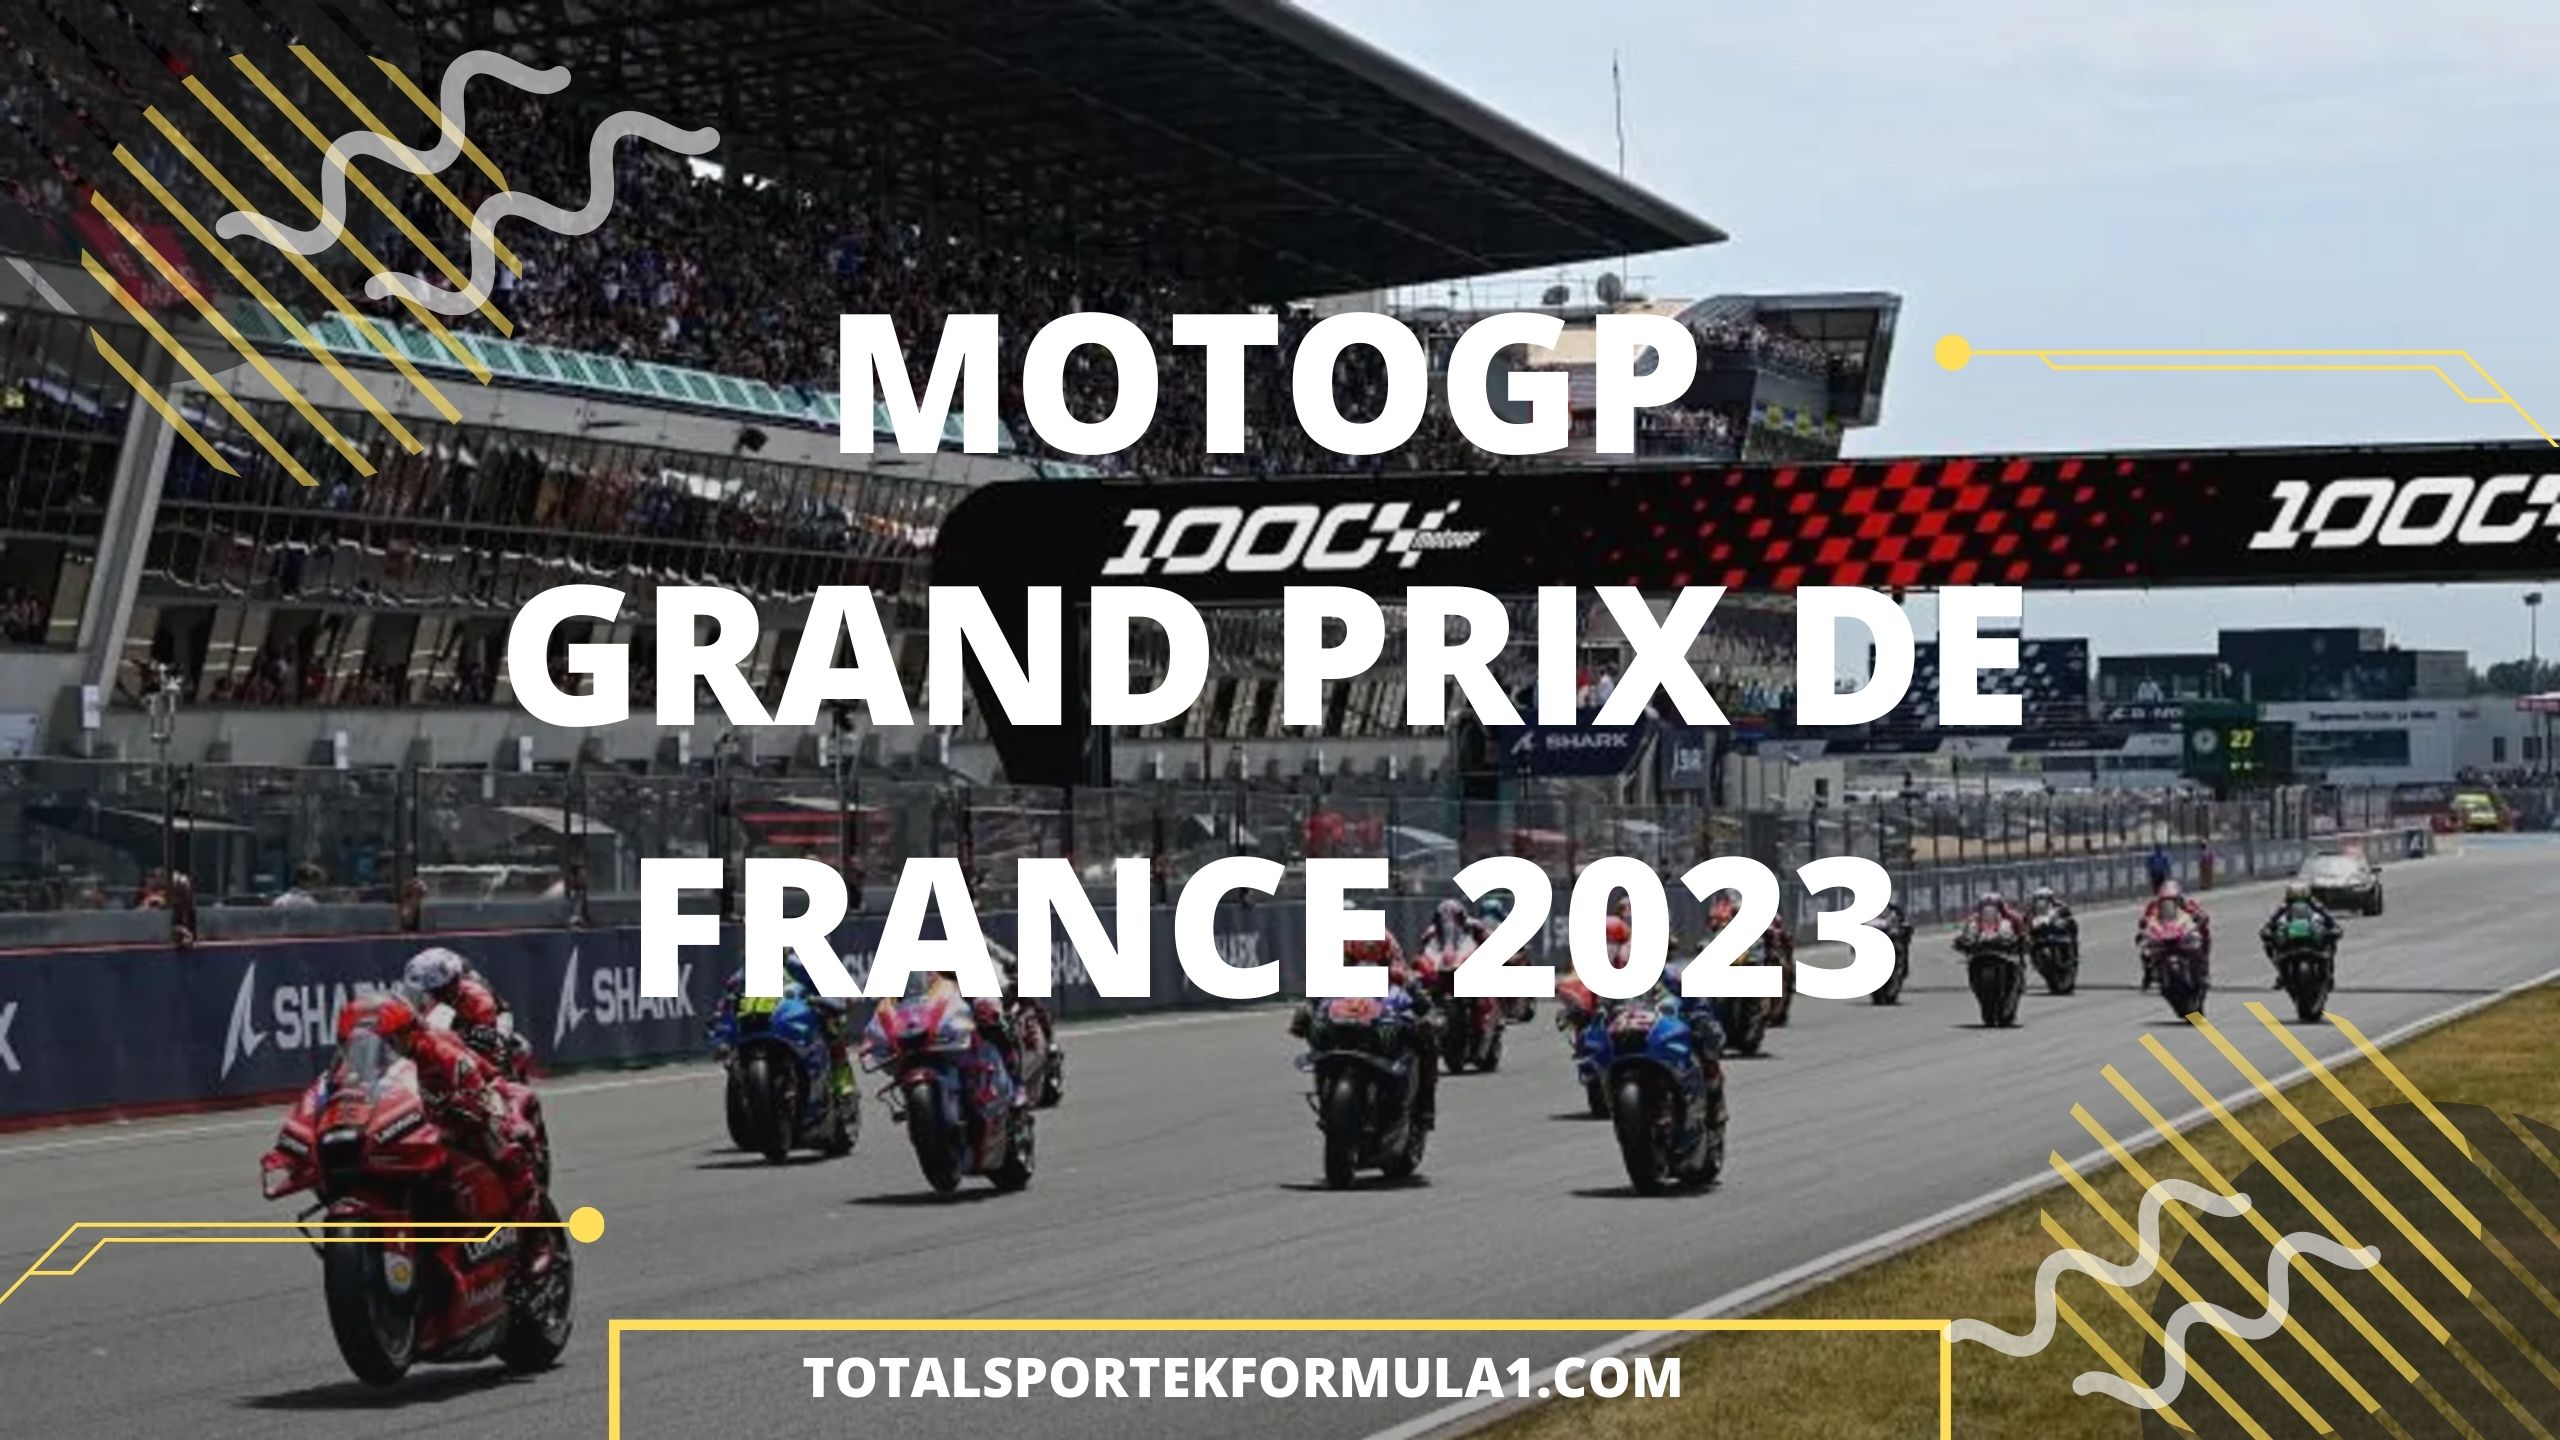 MotoGP GRAND PRIX DE FRANCE